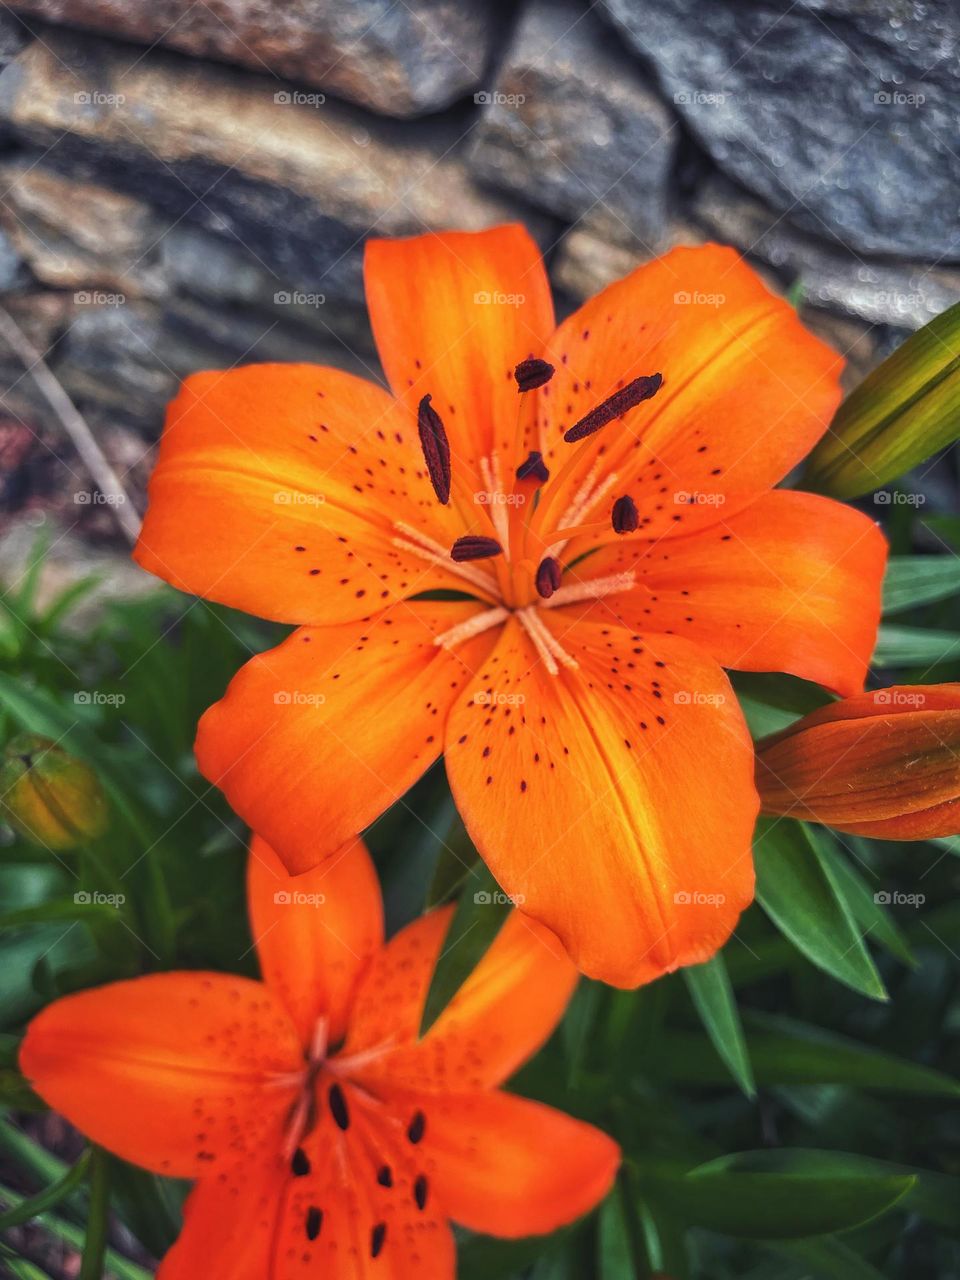 Orange flowers in full bloom